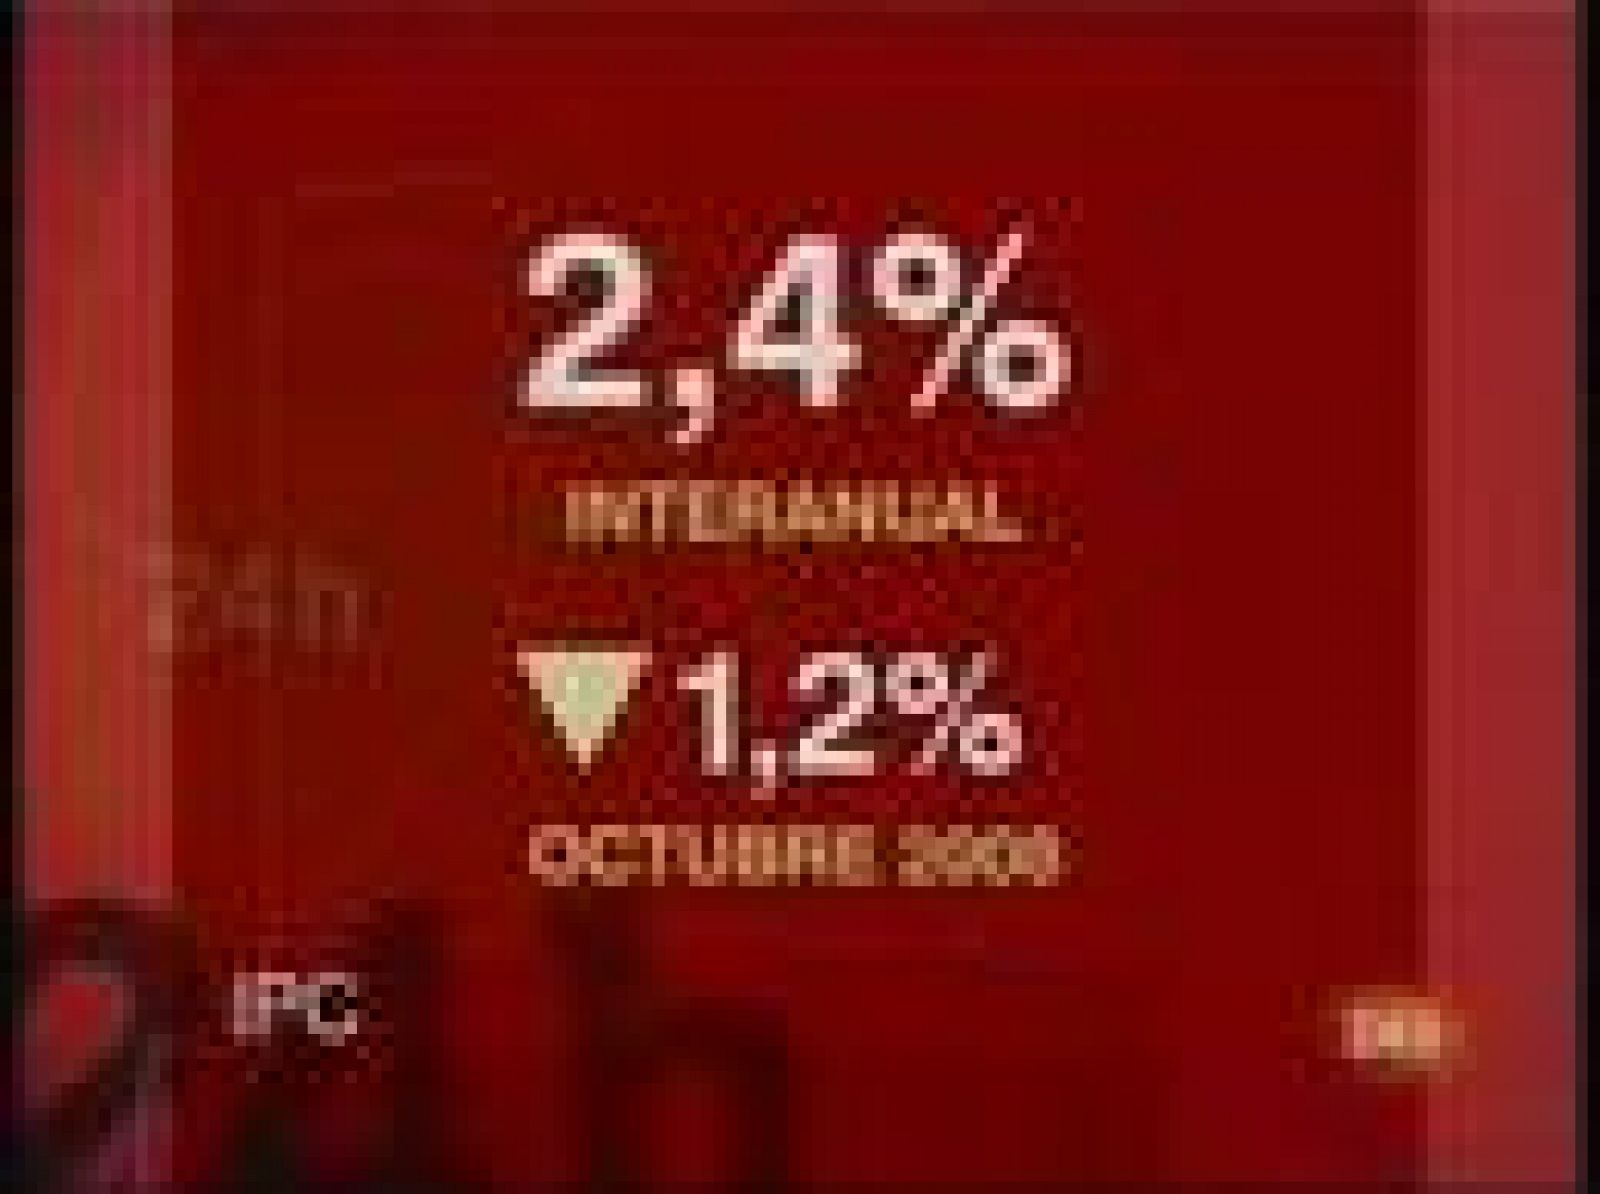  El IPC se reduce un 2'4% tras bajar por cuarto mes consecutivo